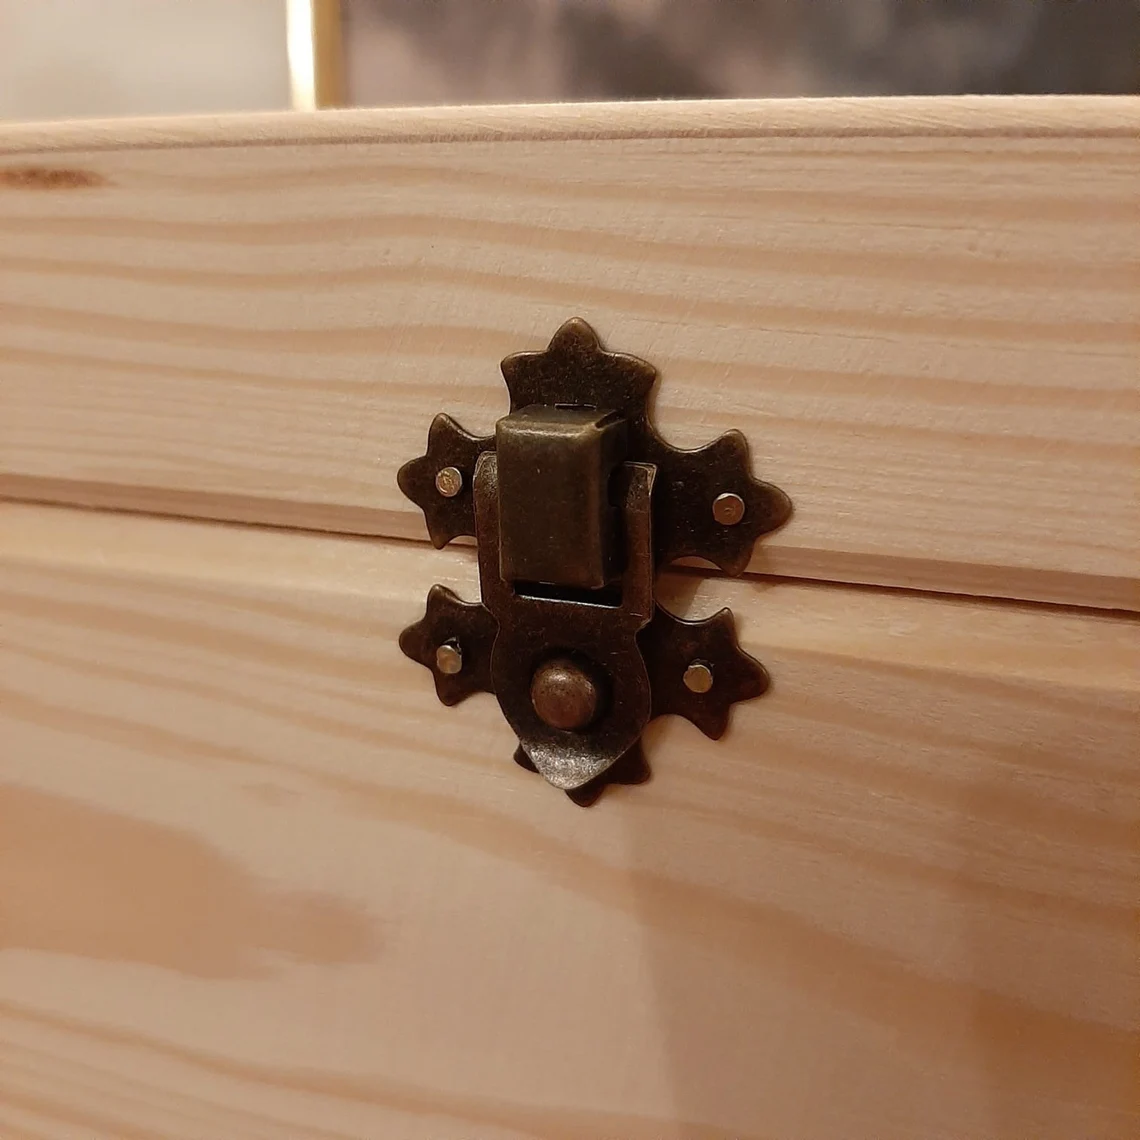 Wooden Unpainted Box - Vintage Clasp